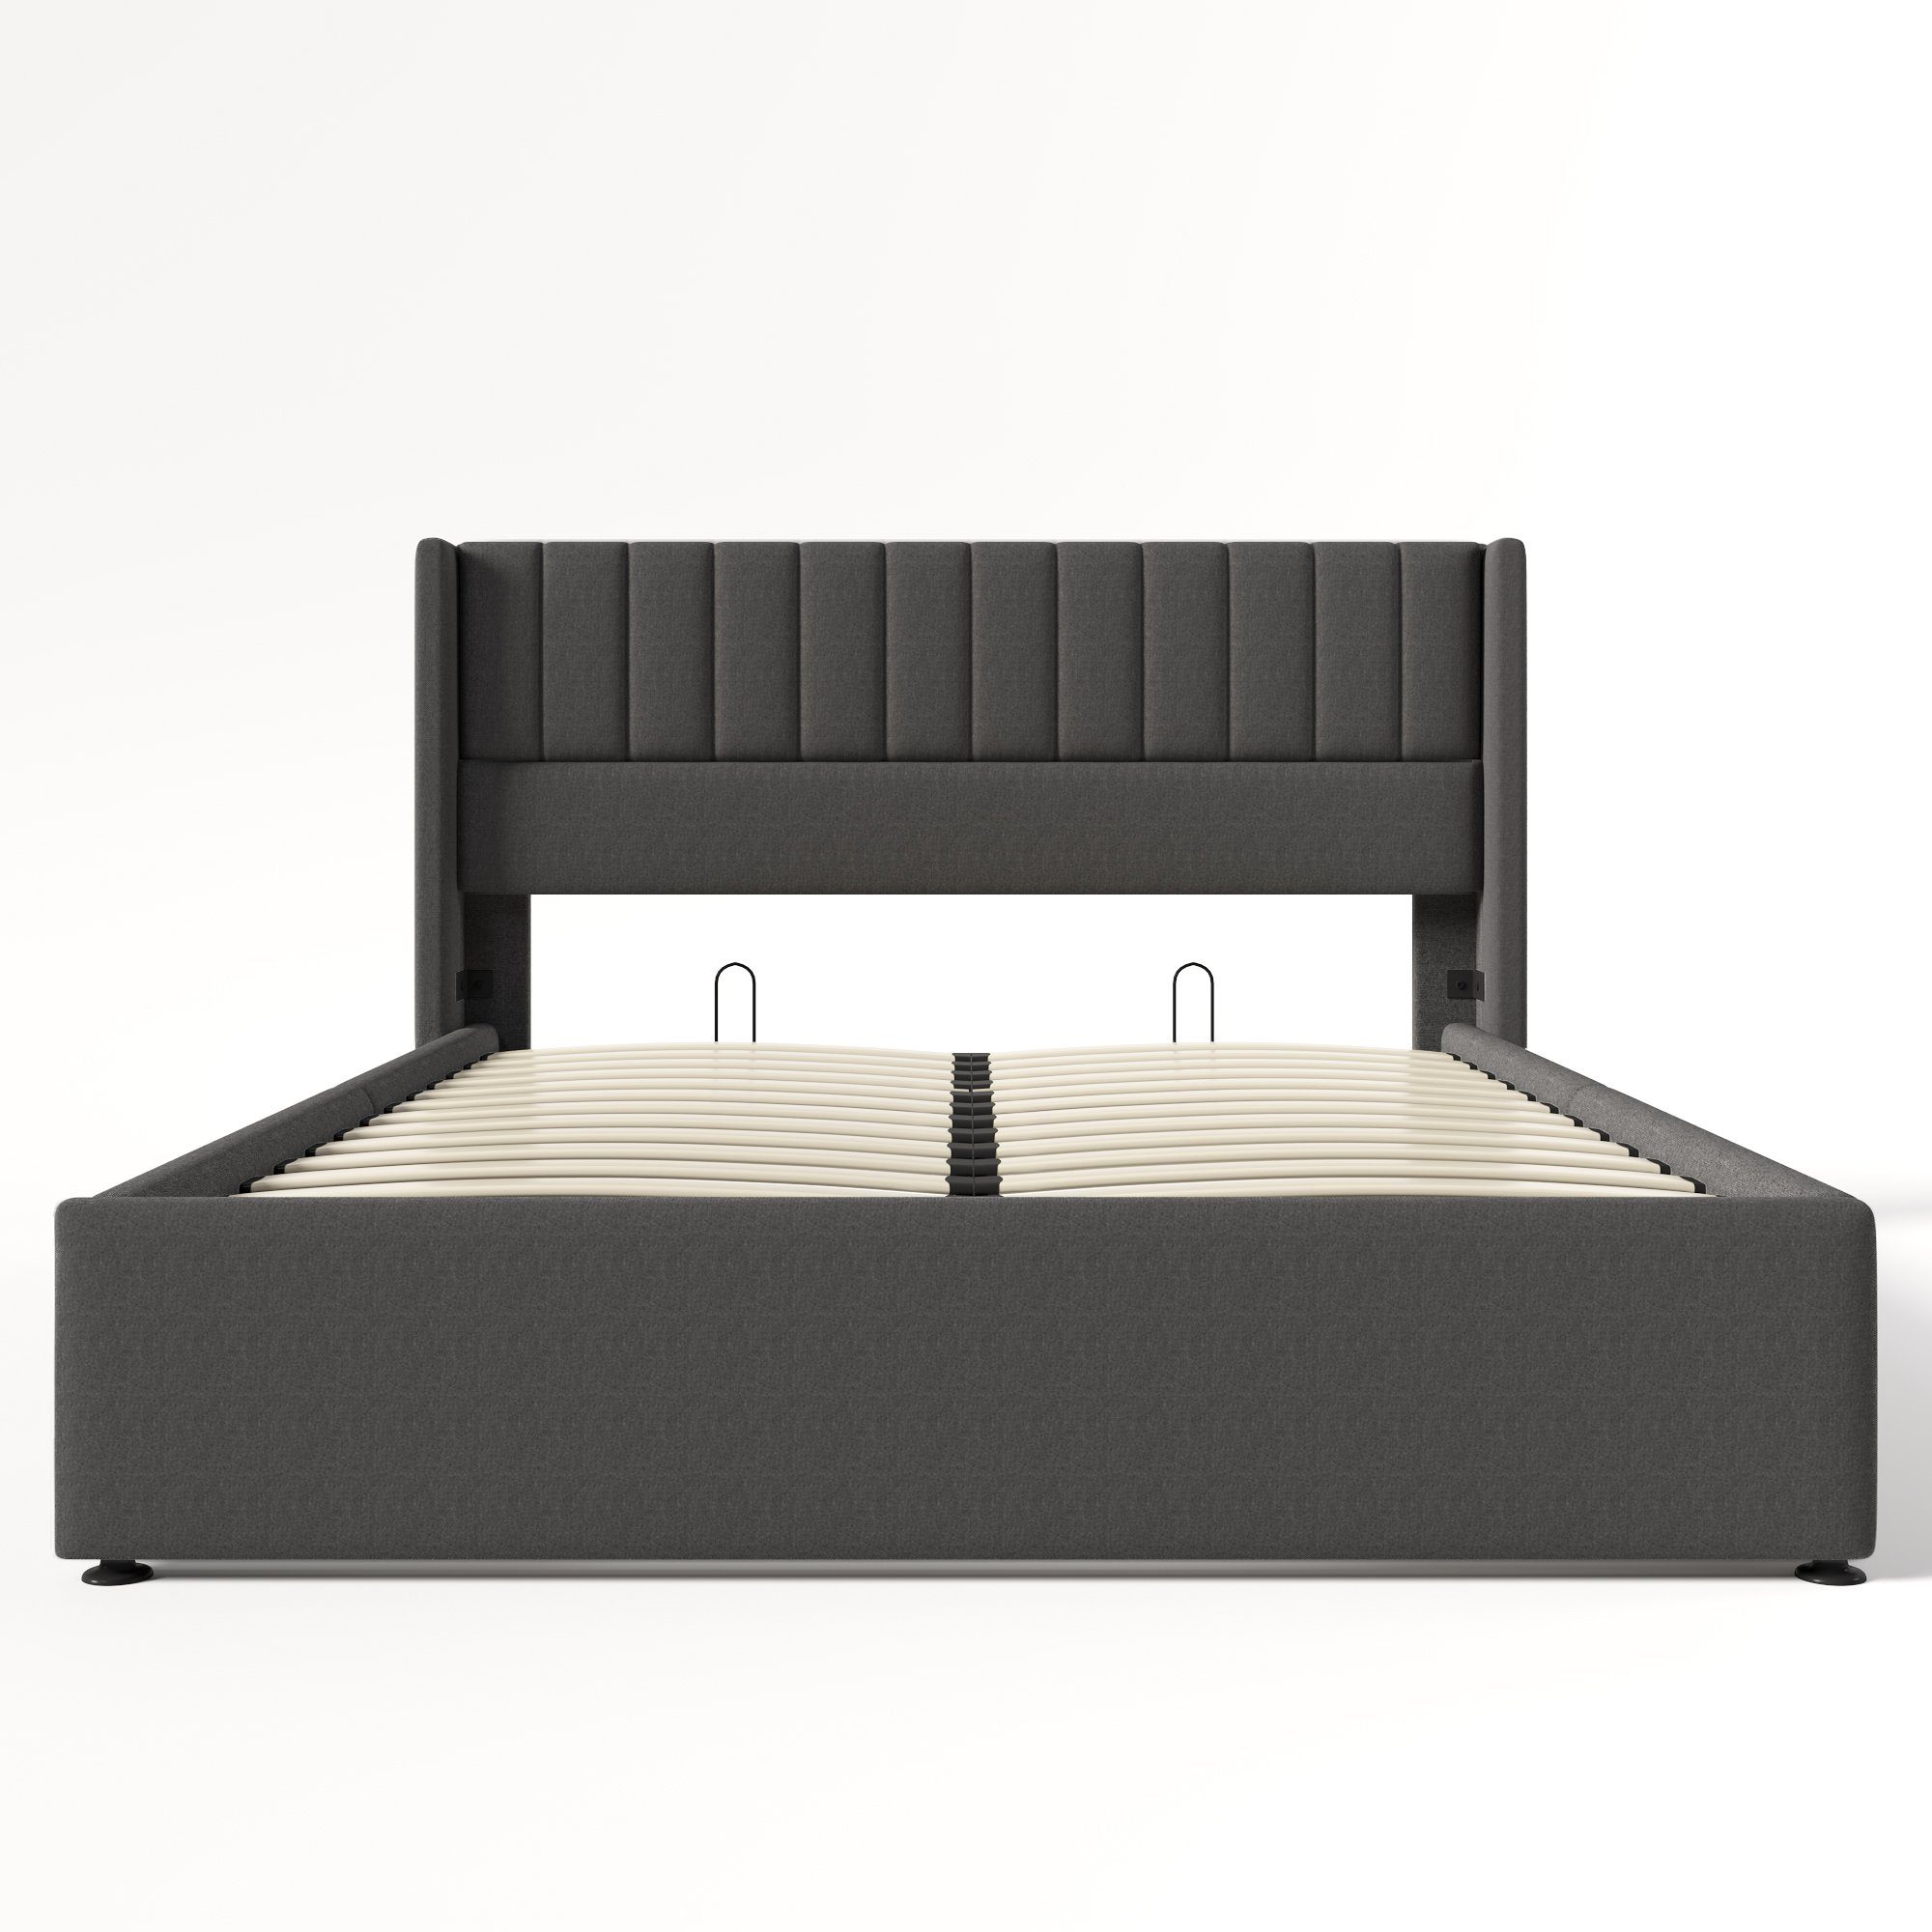 Beige/Grau, Bett Doppelbett unter Leinen mit Stauraum Polsterbett Gotagee dem Polsterbett Stauraum+Lattenrost